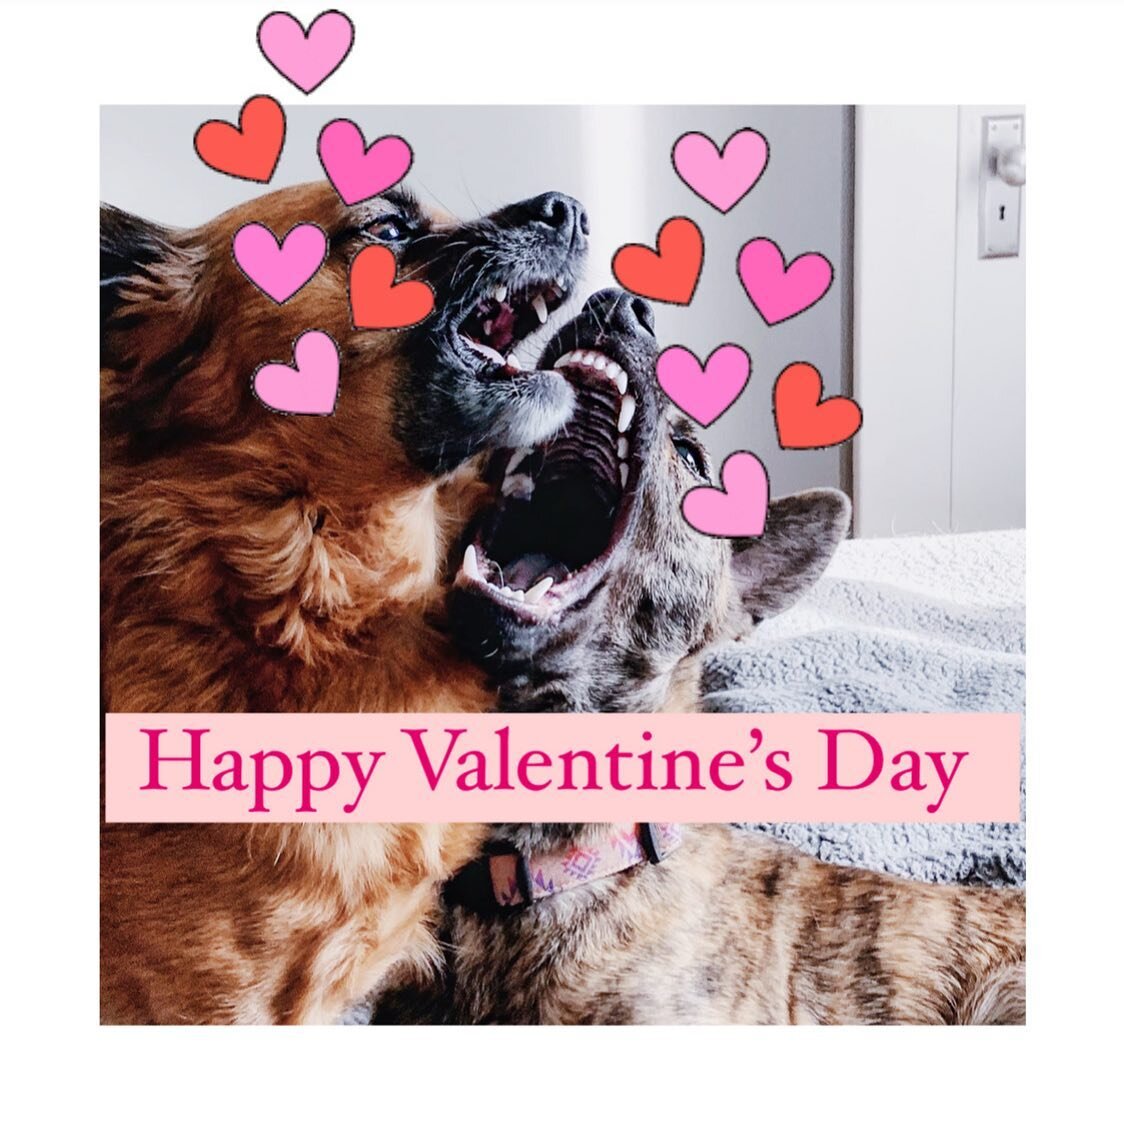 🦊🐯: smoochies to everyone on Valentine&rsquo;s Day! &hearts;️&hearts;️&hearts;️
.
.
.

#valentines #rescuedogsrule #dogsofinstagram #muttsofinstagram #adoptdontshop #instagramdogs #dogslife #bestwoof #formosanmountaindog #puppylove #mutts #chihuahu